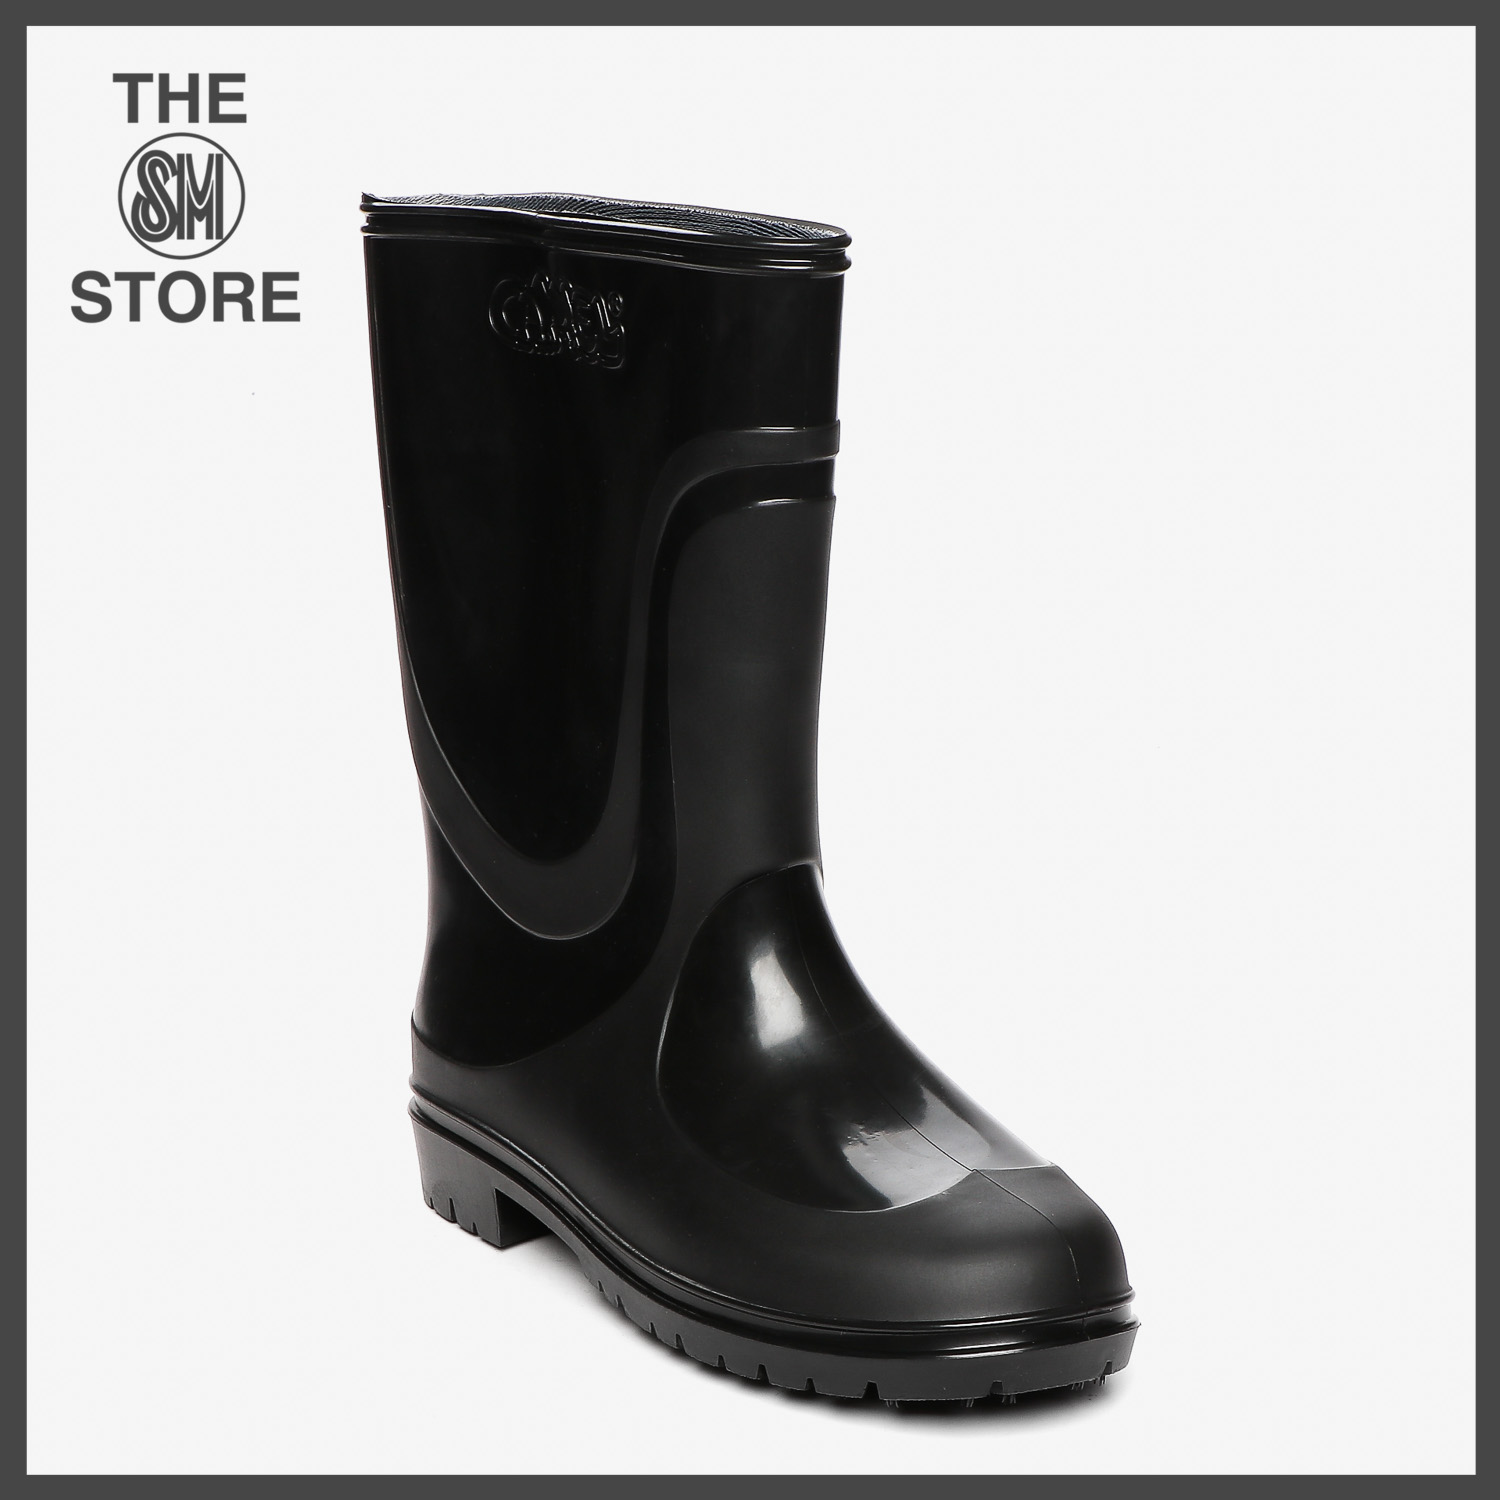 water rain boots